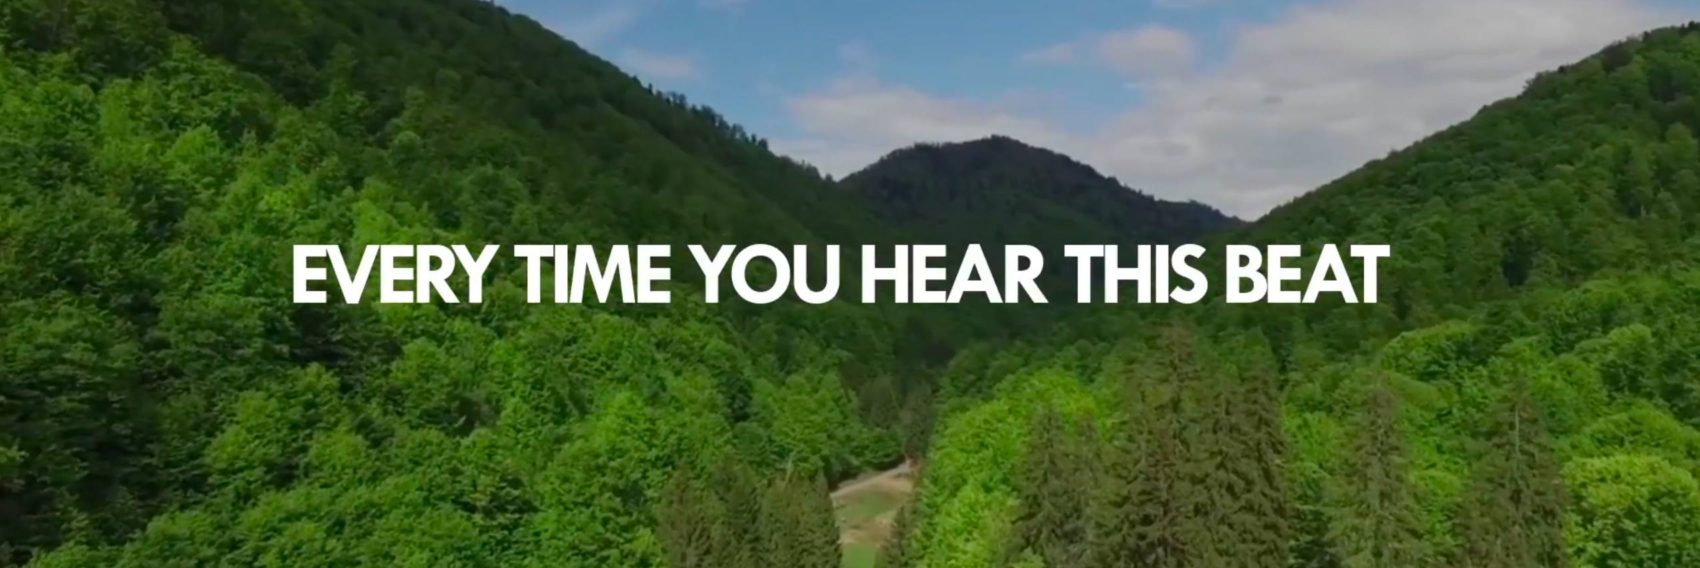 WWF et Virgin radio Romania joignent leurs forces pour lutter contre la déforestation.